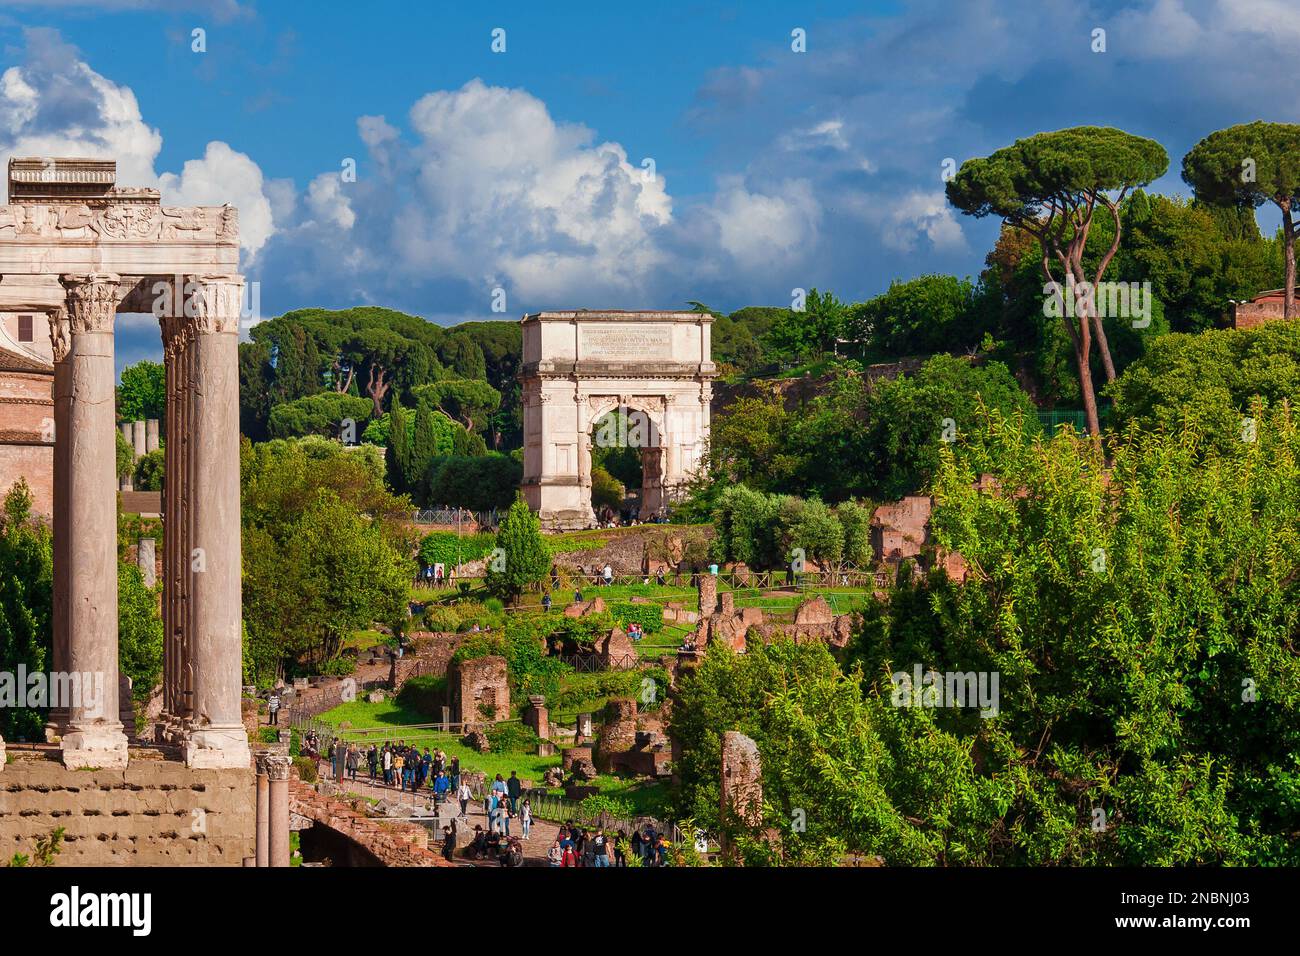 Besichtigungstour in Rom. Touristen besuchen die antiken Ruinen des Forum Romanum mit dem berühmten Titusbogen Stockfoto